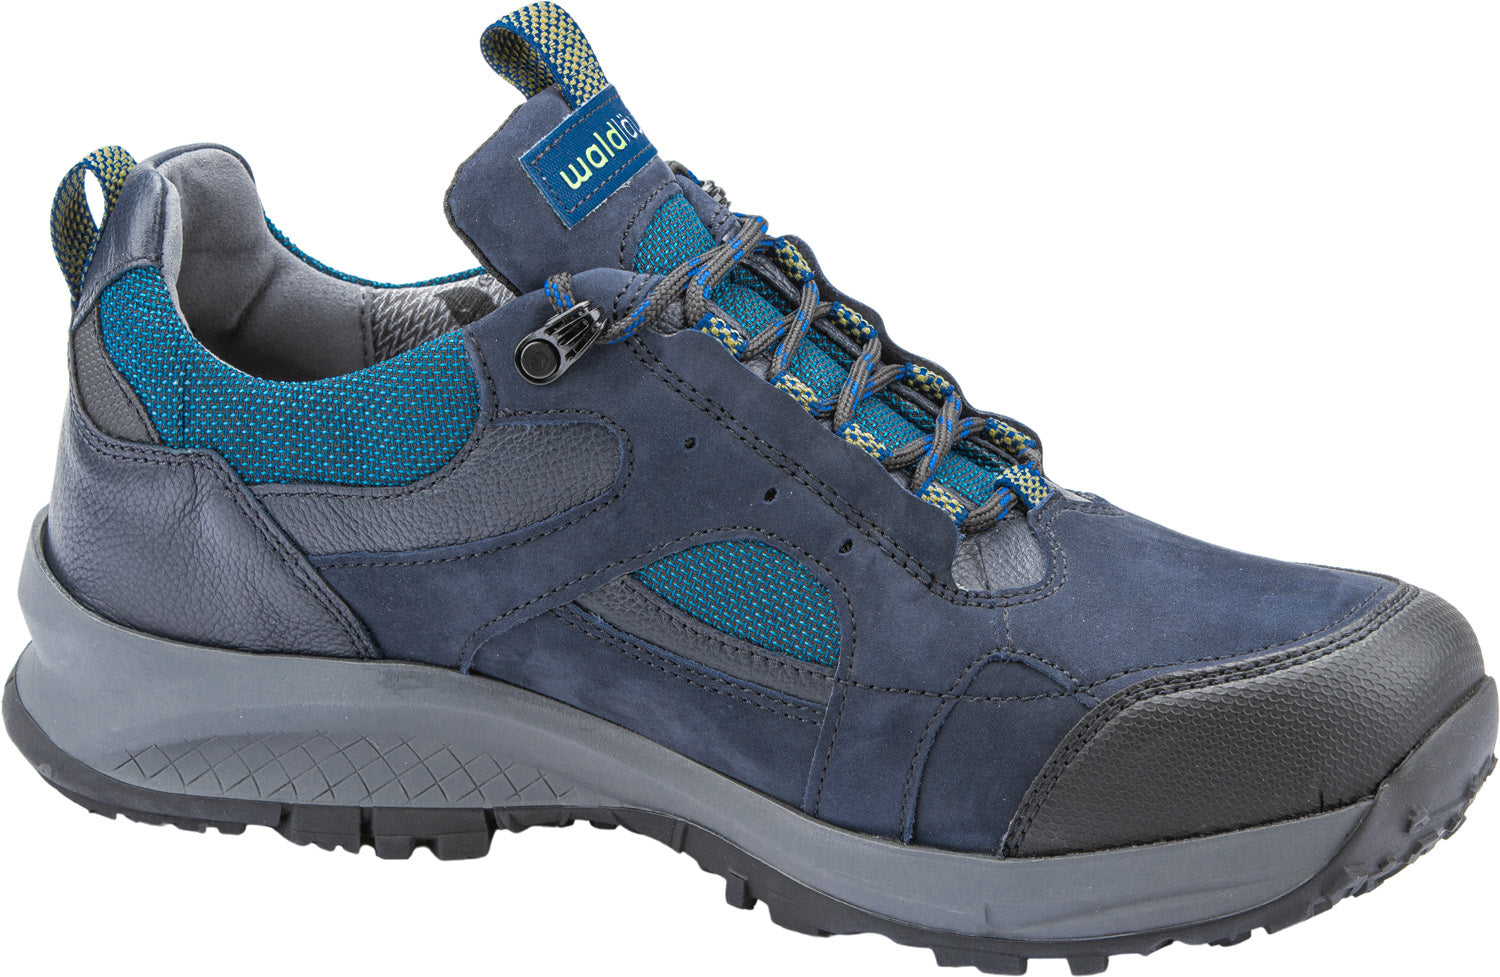 Waldlaufer 335959 510 845 Men’s Black and Marine Blue Lace Up Walking Shoes